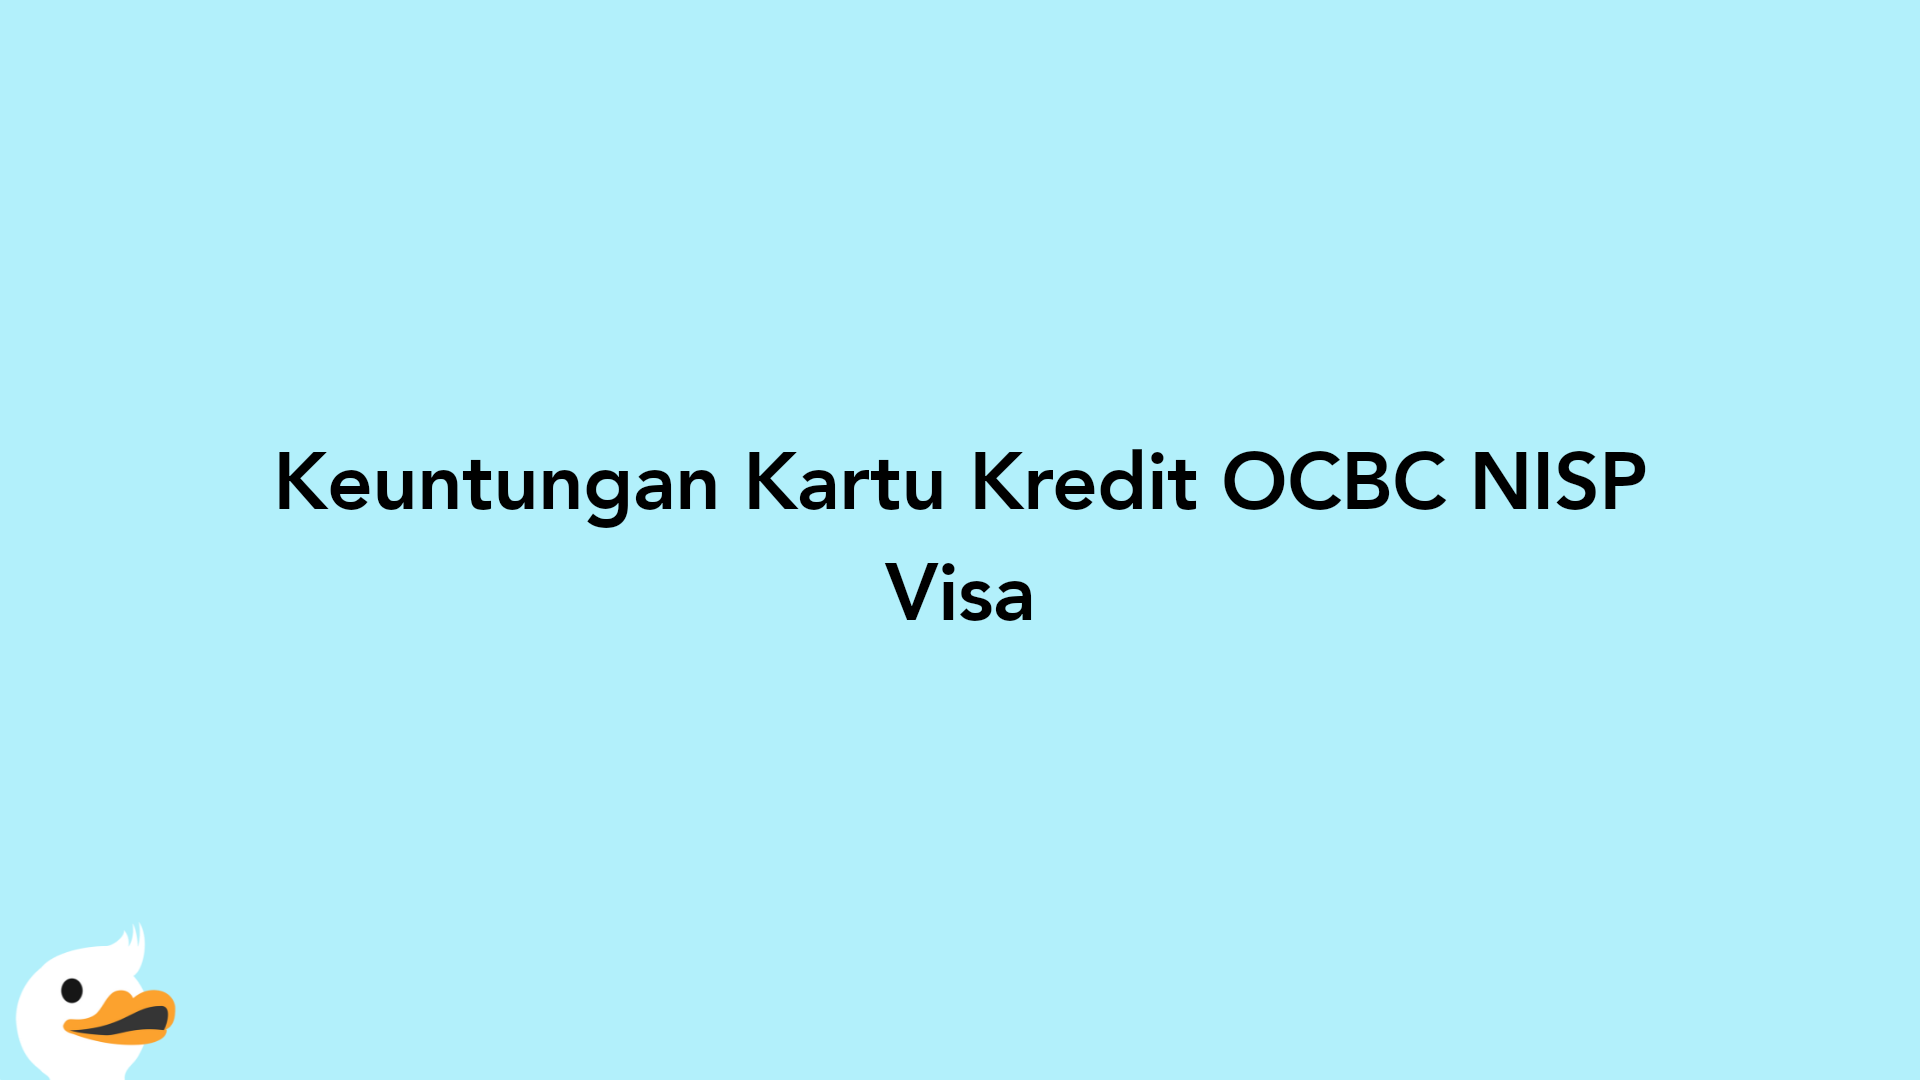 Keuntungan Kartu Kredit OCBC NISP Visa